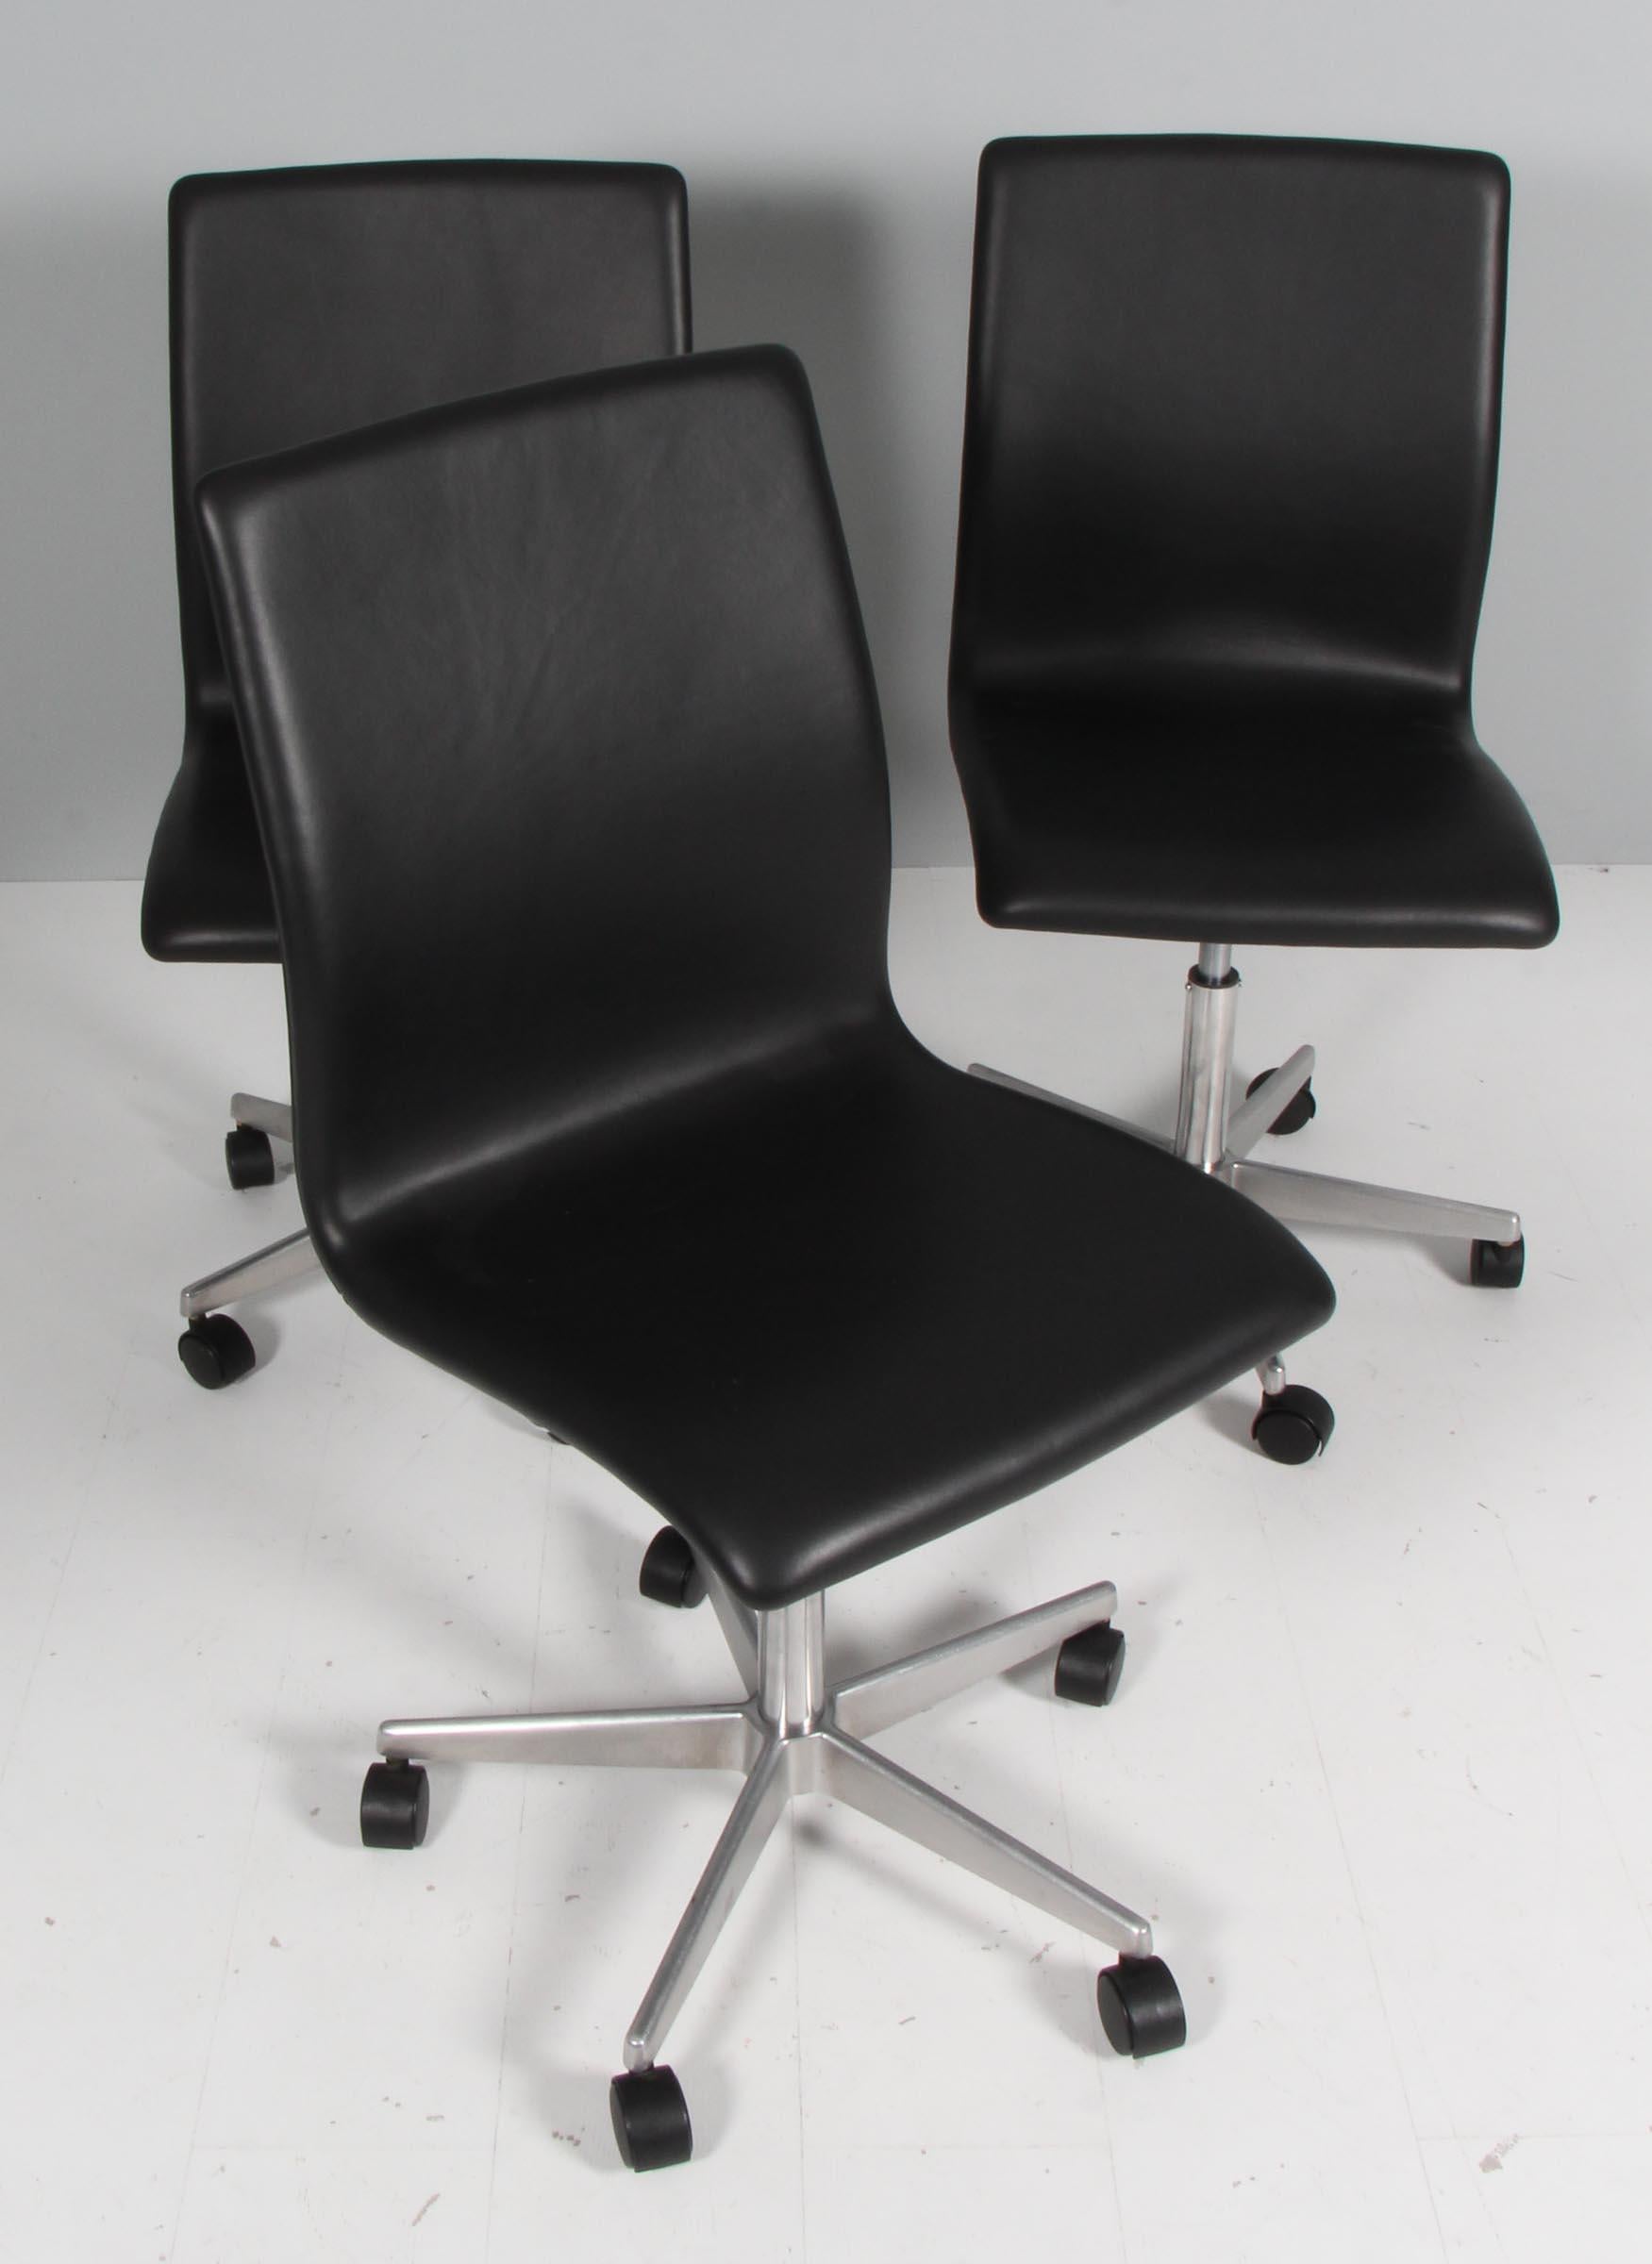 Chaise de bureau Arne Jacobsen Oxford, base cinq étoiles en aluminium. Tournant et avec des roues. Avec réglage en hauteur

Nouvelle garniture en cuir pur aniline pleine fleur noir.

Fabriqué par Fritz Hansen.

Original conçu pour l'université